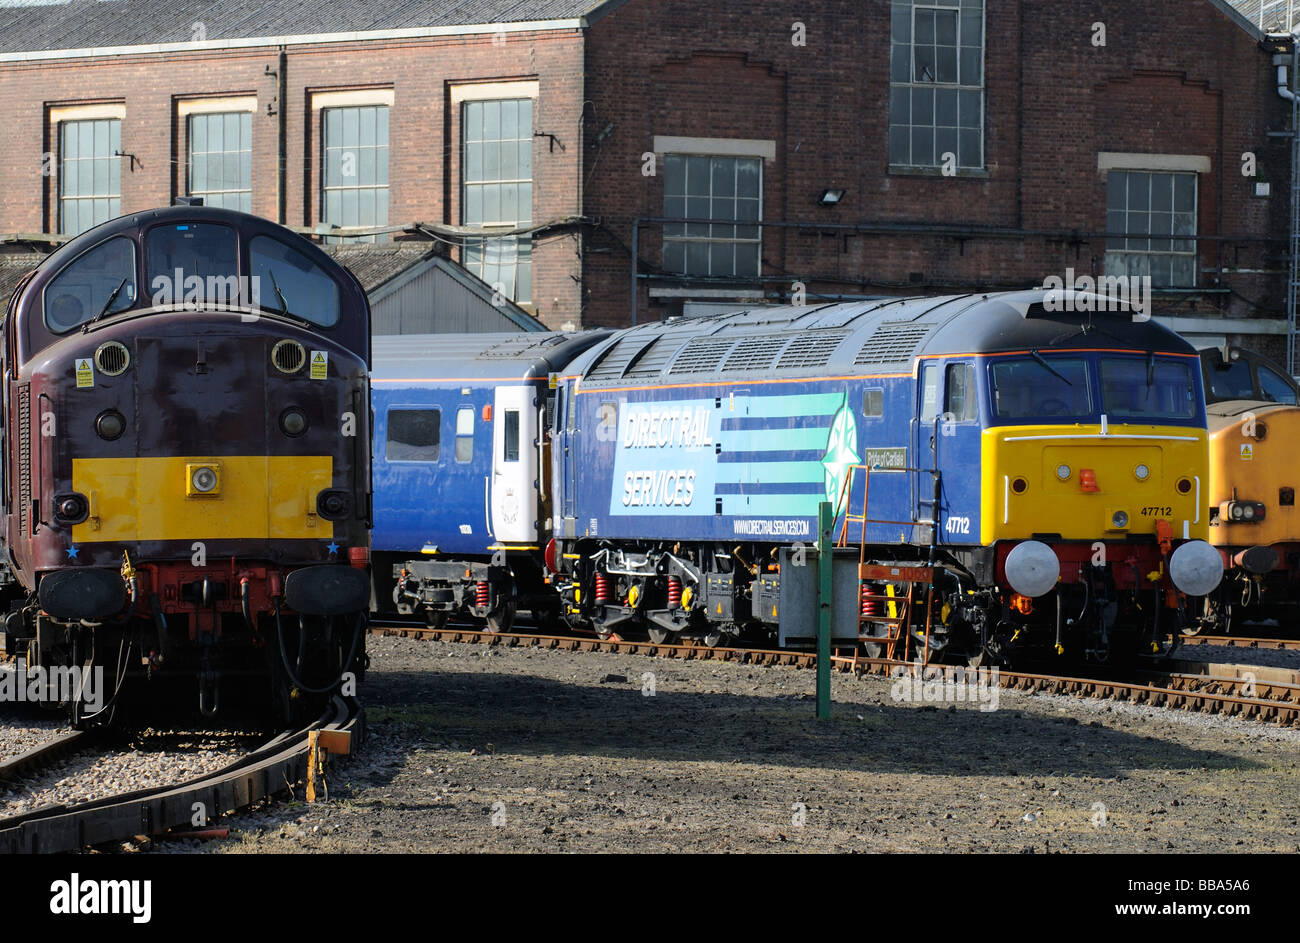 Direct Rail Services locomotive Pride of Carlisle un loco de classe 47 vu à Eastleigh, Hampshire, Angleterre Banque D'Images